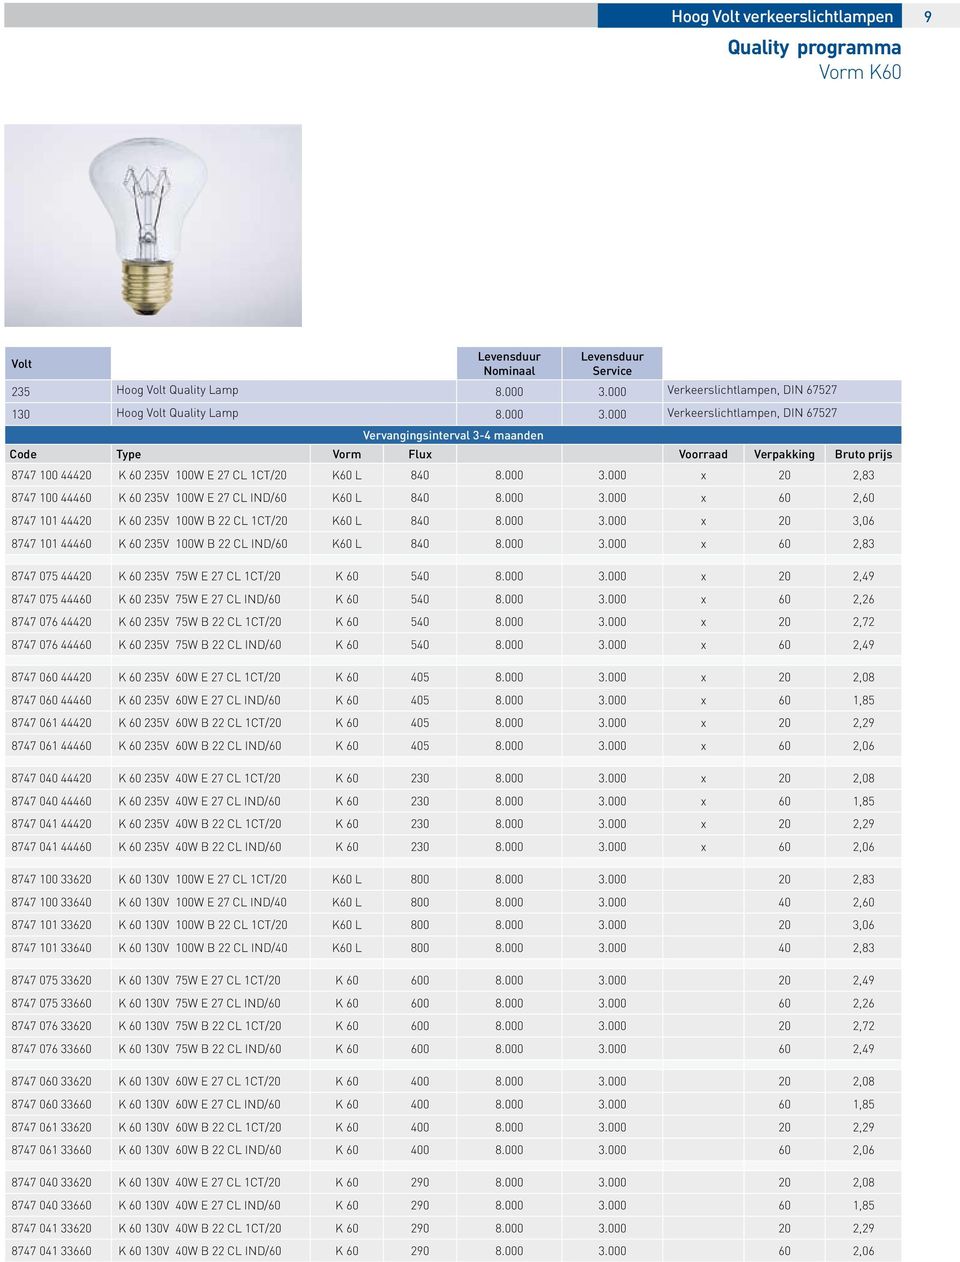 000 Verkeerslichtlampen, DIN 67527 Vervangingsinterval 3-4 maanden Code Type Vorm Flux Voorraad Verpakking Bruto prijs 8747 100 44420 K 60 235V 100W E 27 CL 1CT/20 K60 L 840 8.000 3.